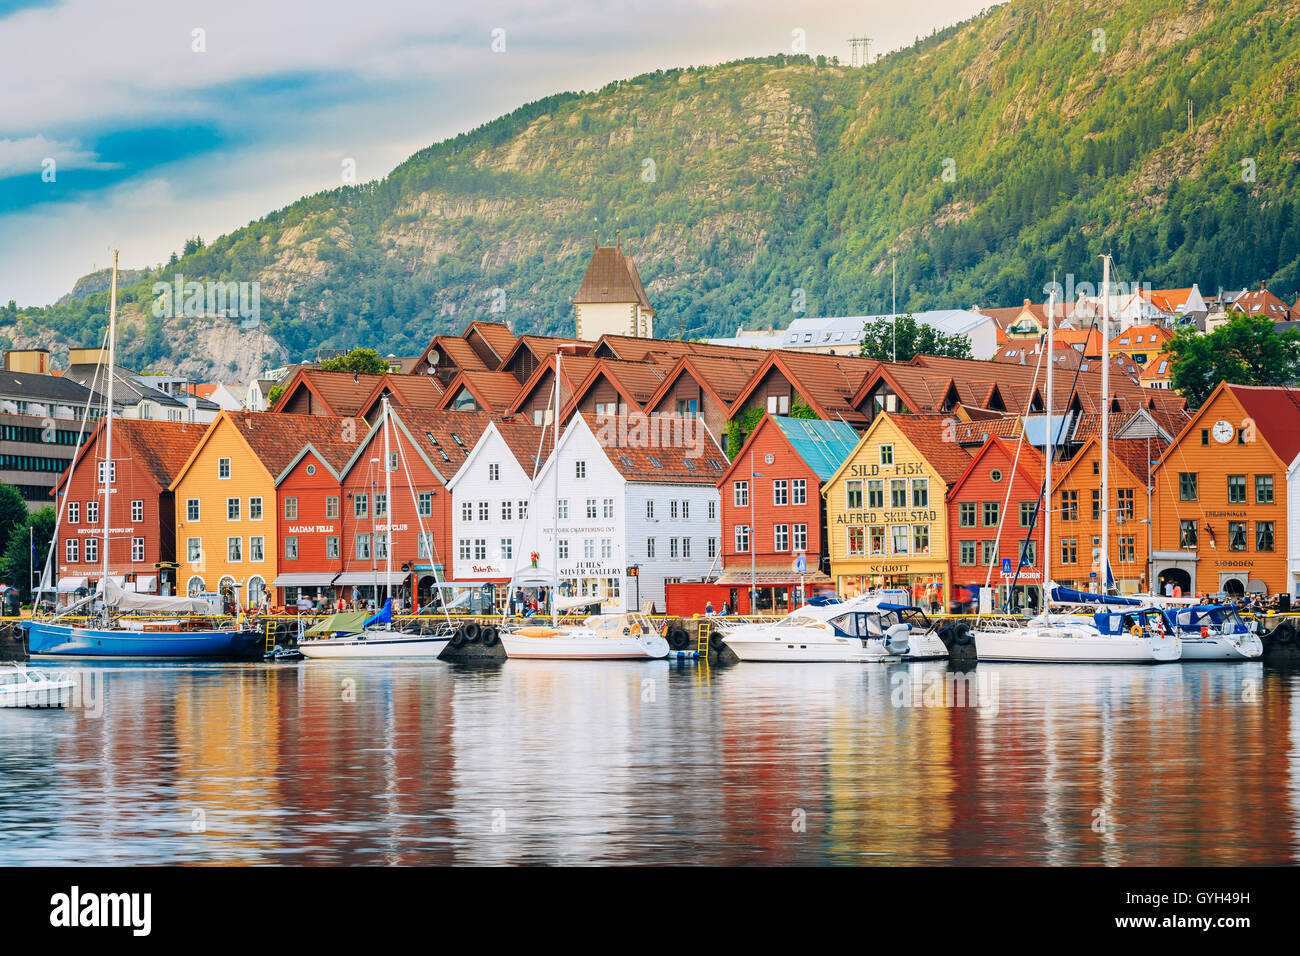 Bergen, Norway - August 3, 2014: View of historical buildings in Bryggen- Hanseatic wharf in Bergen, Norway. UNESCO World Herita Stock Photo